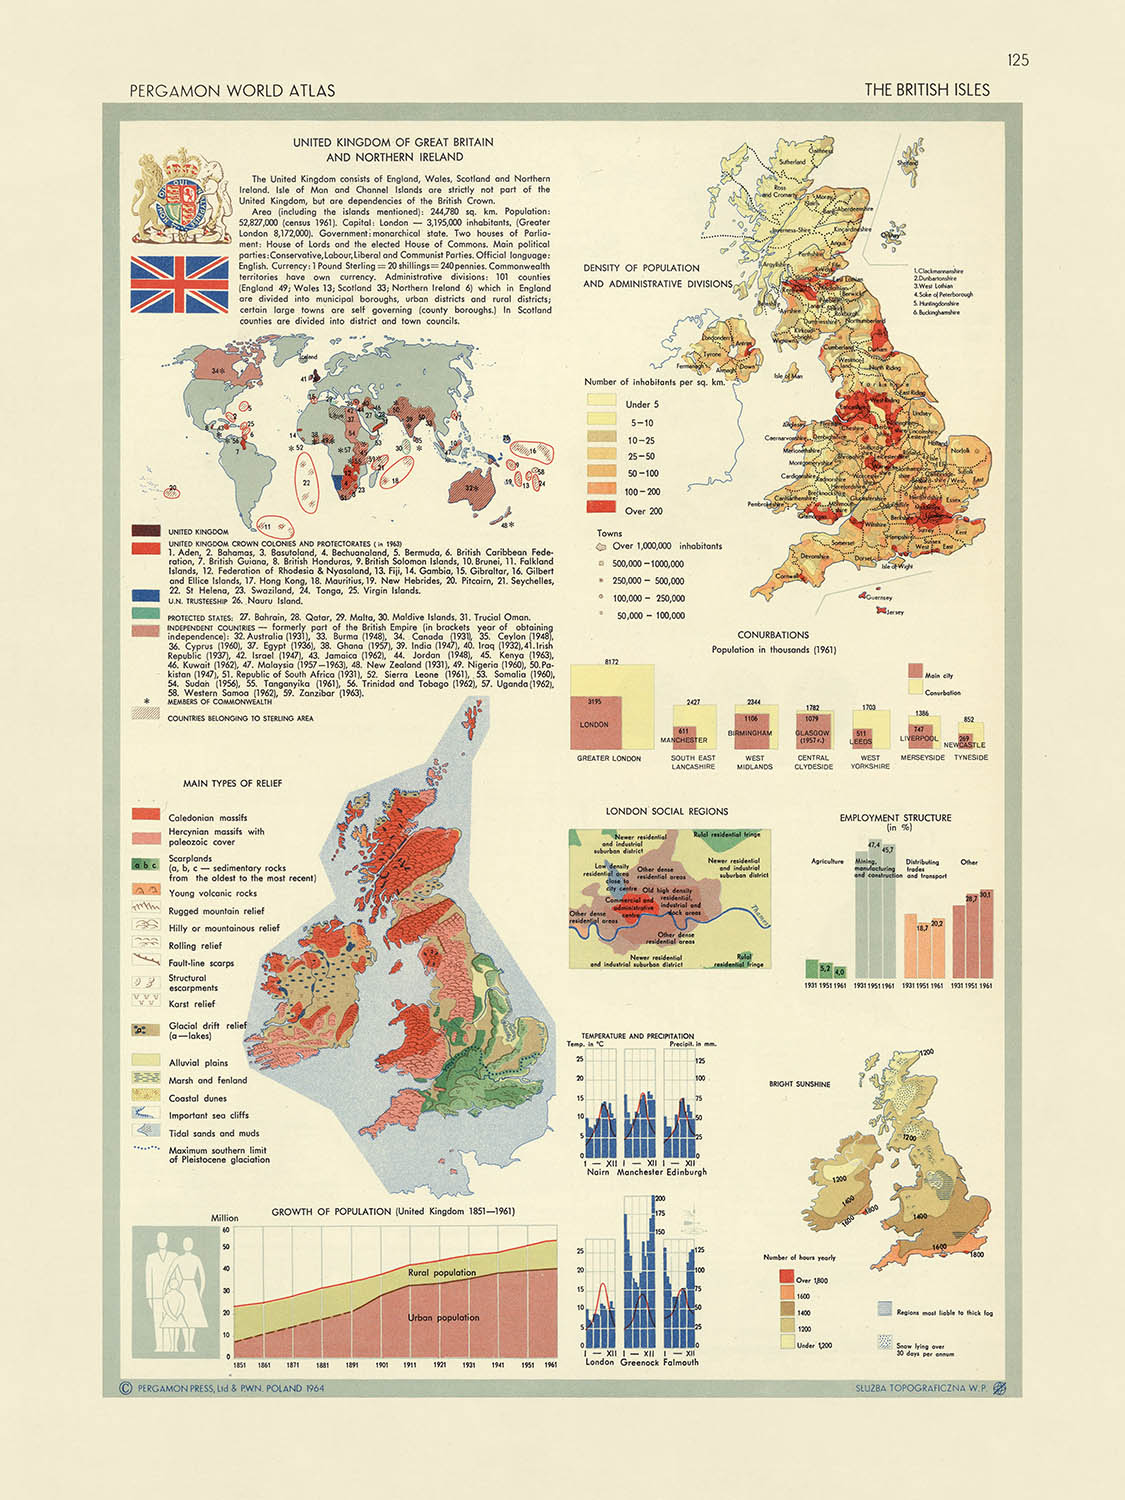 Mapa infográfico de las Islas Británicas realizado por el Servicio de Topografía del Ejército Polaco, 1967: densidad de población, variación climática, estadísticas de empleo